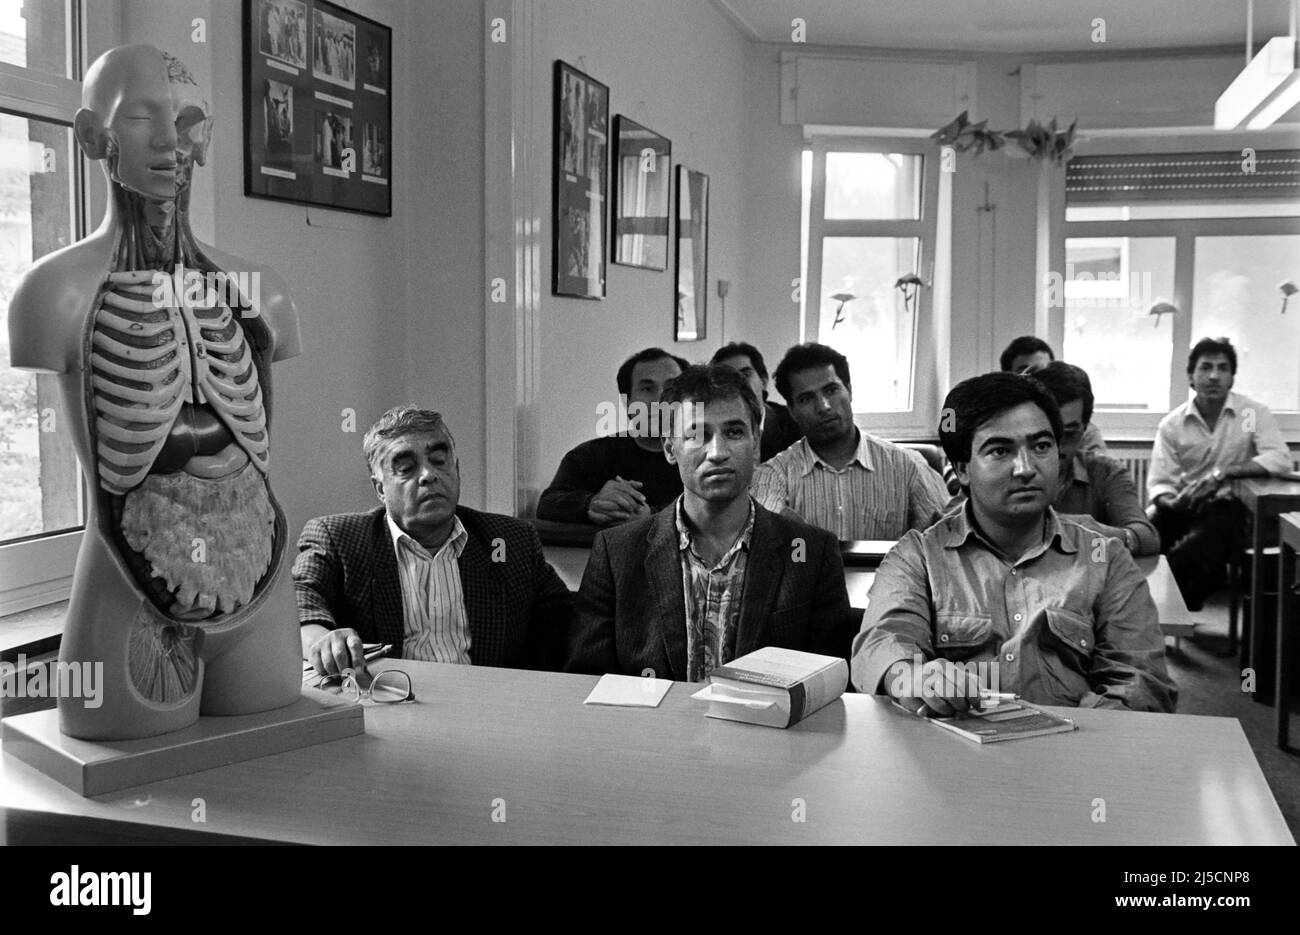 Bochum, DEU, 08/20/1991 - i medici afghani che sono venuti in Germania come rifugiati e hanno chiesto asilo ricevono una formazione avanzata in chirurgia presso un ospedale di Bochum. [traduzione automatizzata] Foto Stock